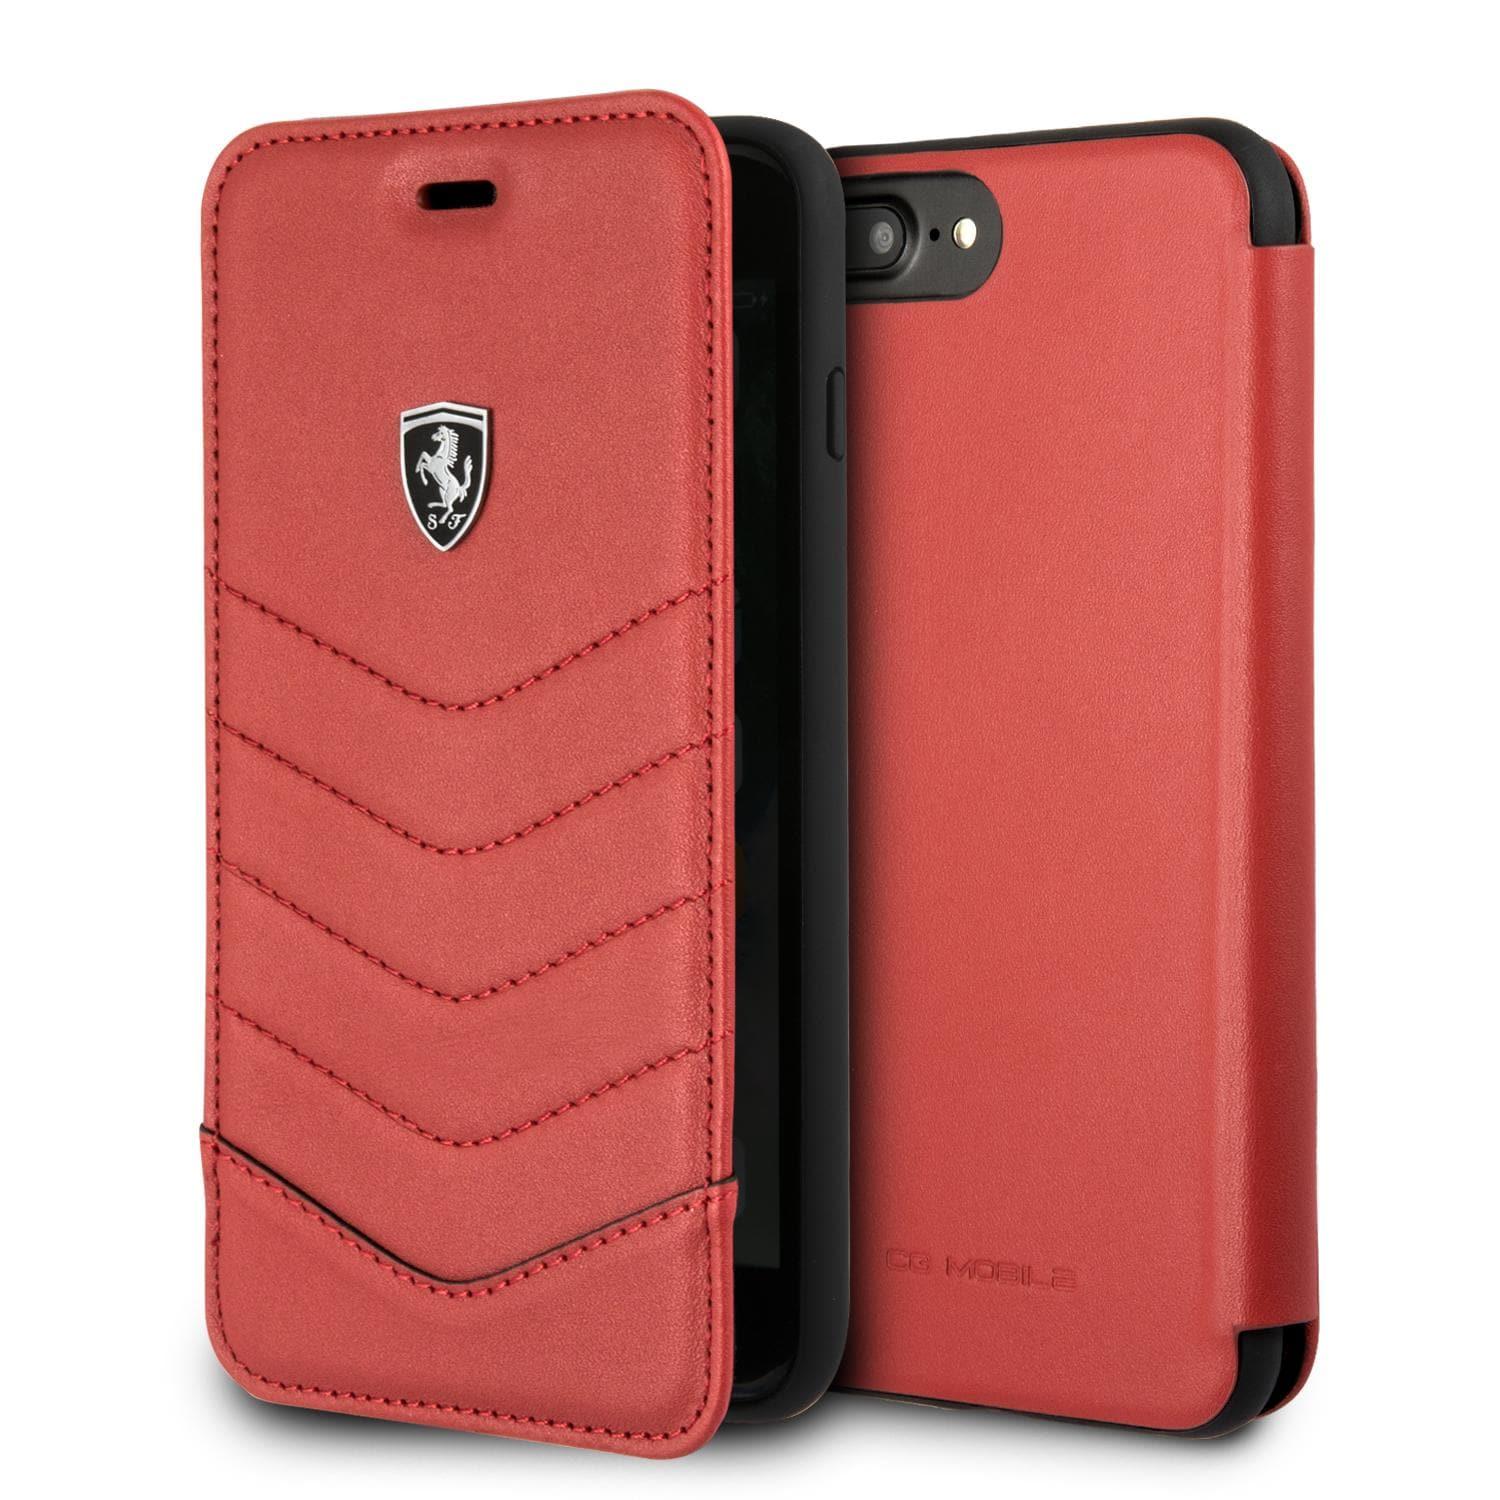 Ferrari phone case and cardholder